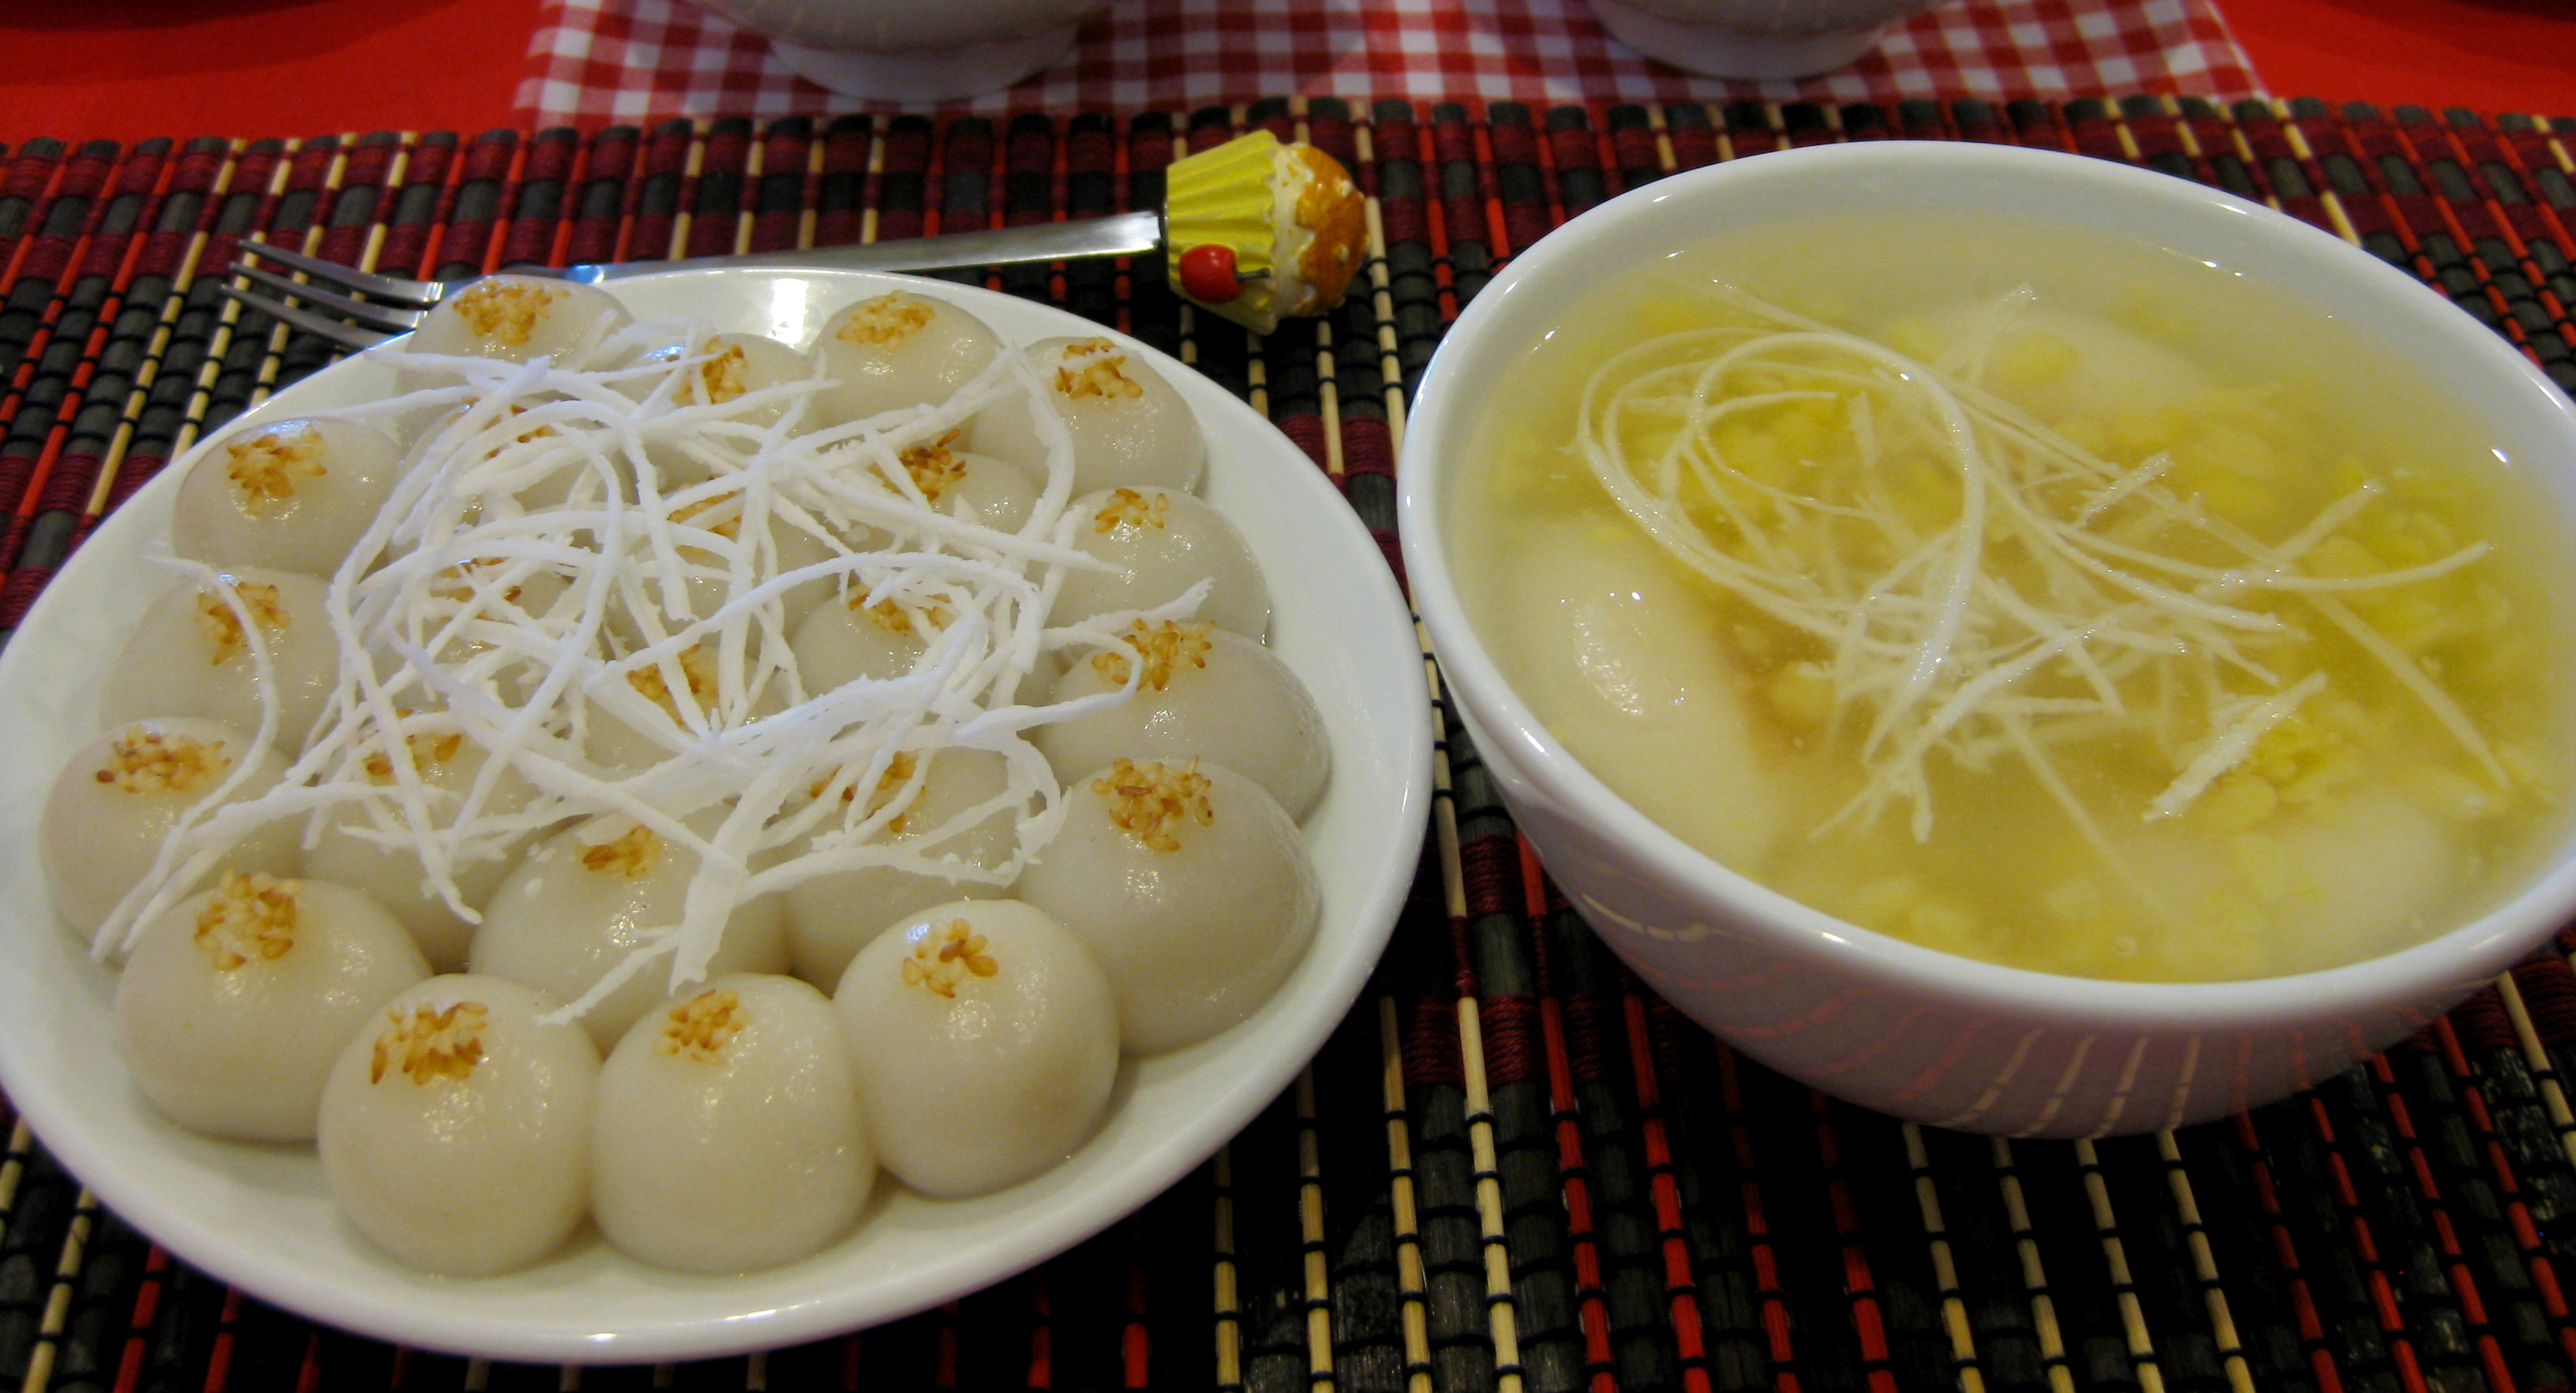 Bánh trôi bánh chay đã trở thành món ăn truyền thống trong ngày Tết Hàn thực 3/3 âm lịch